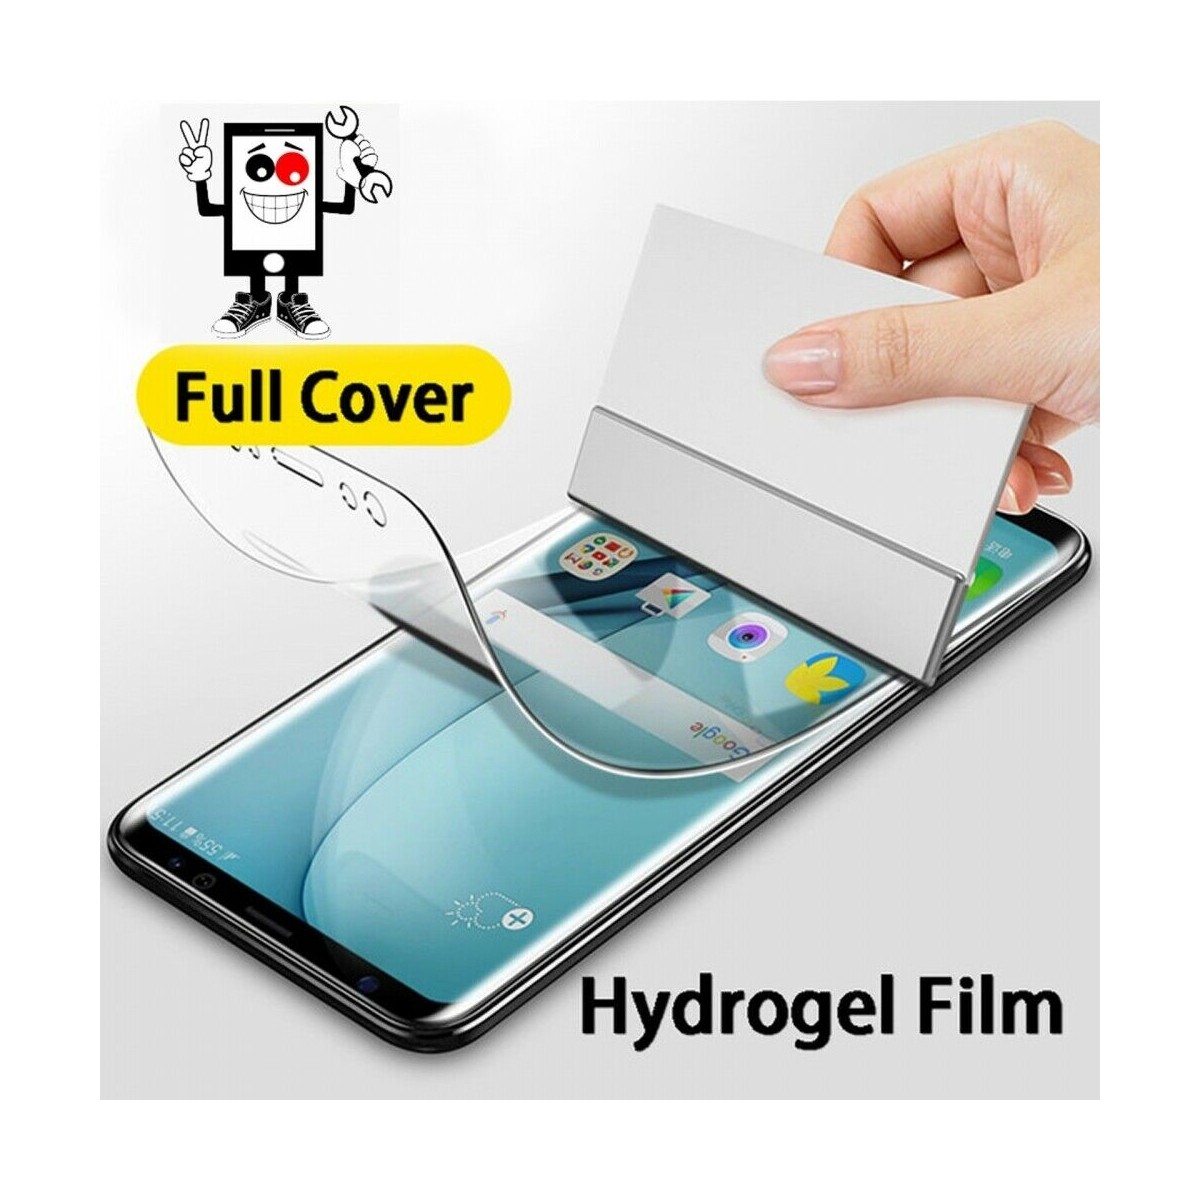 Protector Trasero Autorreparable de Hidrogel para Apple iPhone 6S